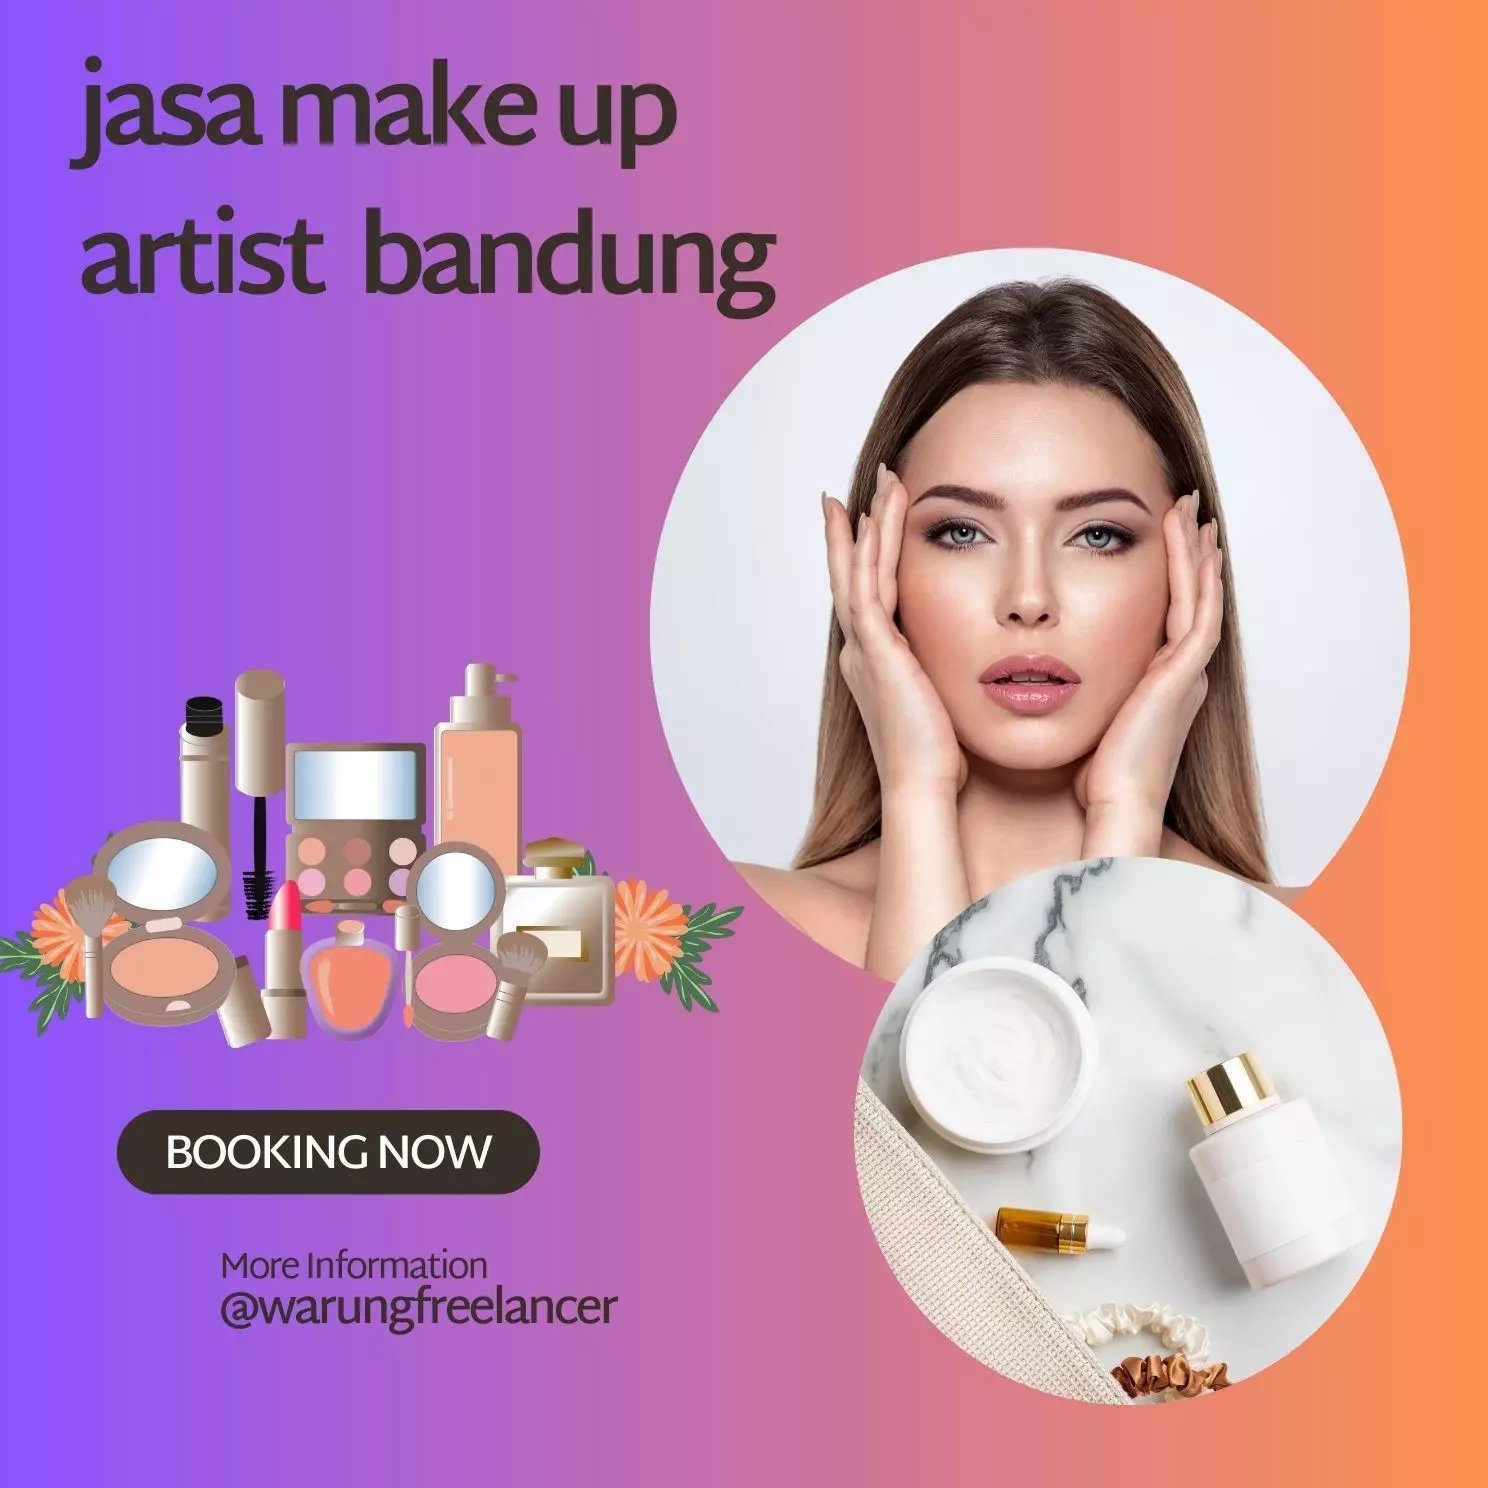 Pengertian Jasa Make Up Artist Bandung